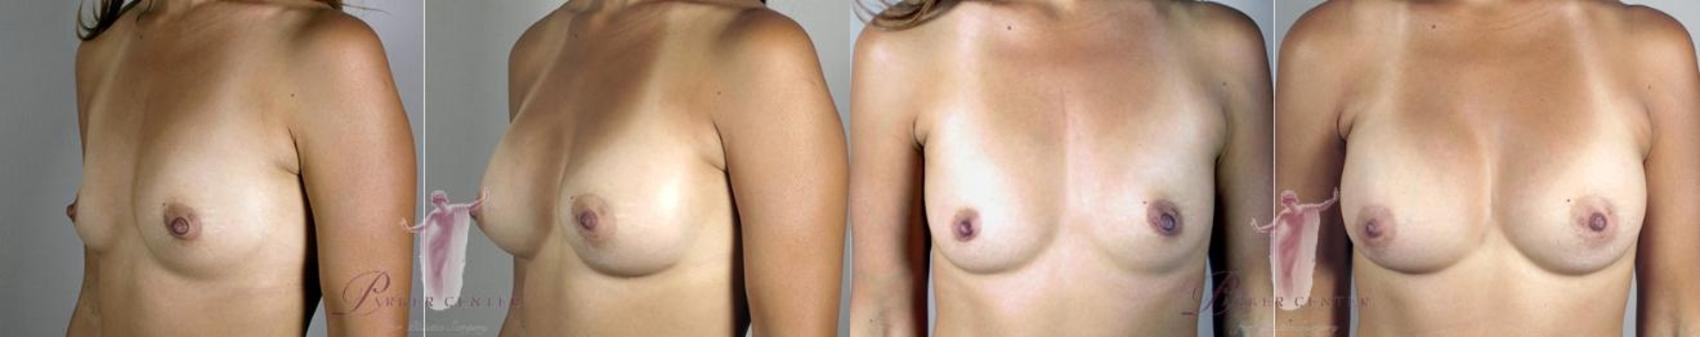 Liposuction Case 1102 Before & After Left Side | Paramus, NJ | Parker Center for Plastic Surgery